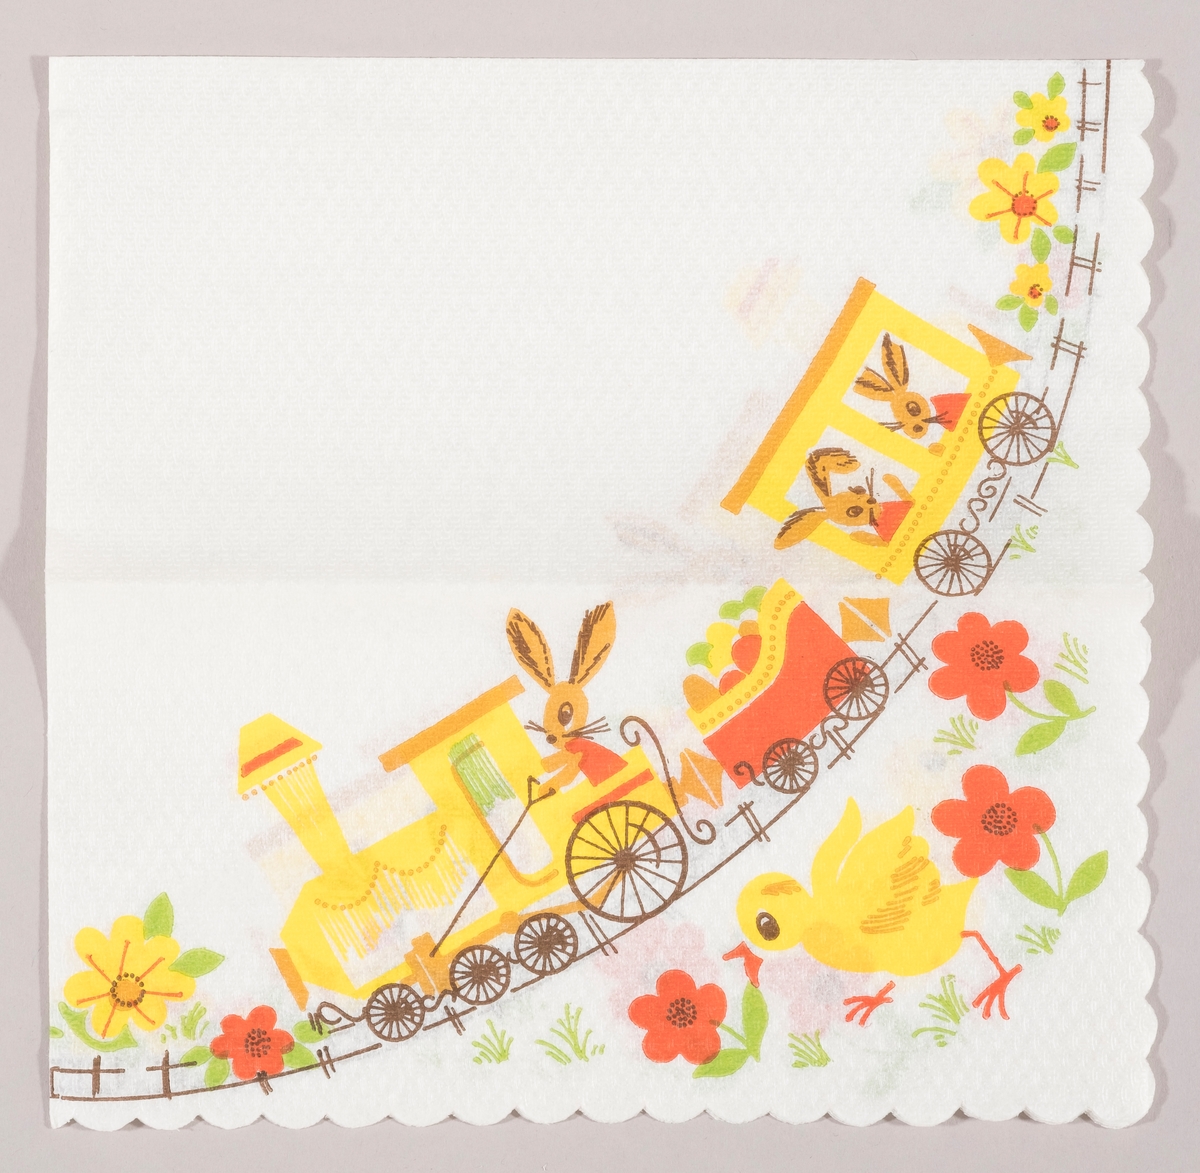 Et tog med lokomotiv og to vogner. En påskeharer sitter i lokomotivet og to i en vogn. I en tredje vogn er der påskeegg. En kylling løper i en blomstereng med røde og gule blomster.